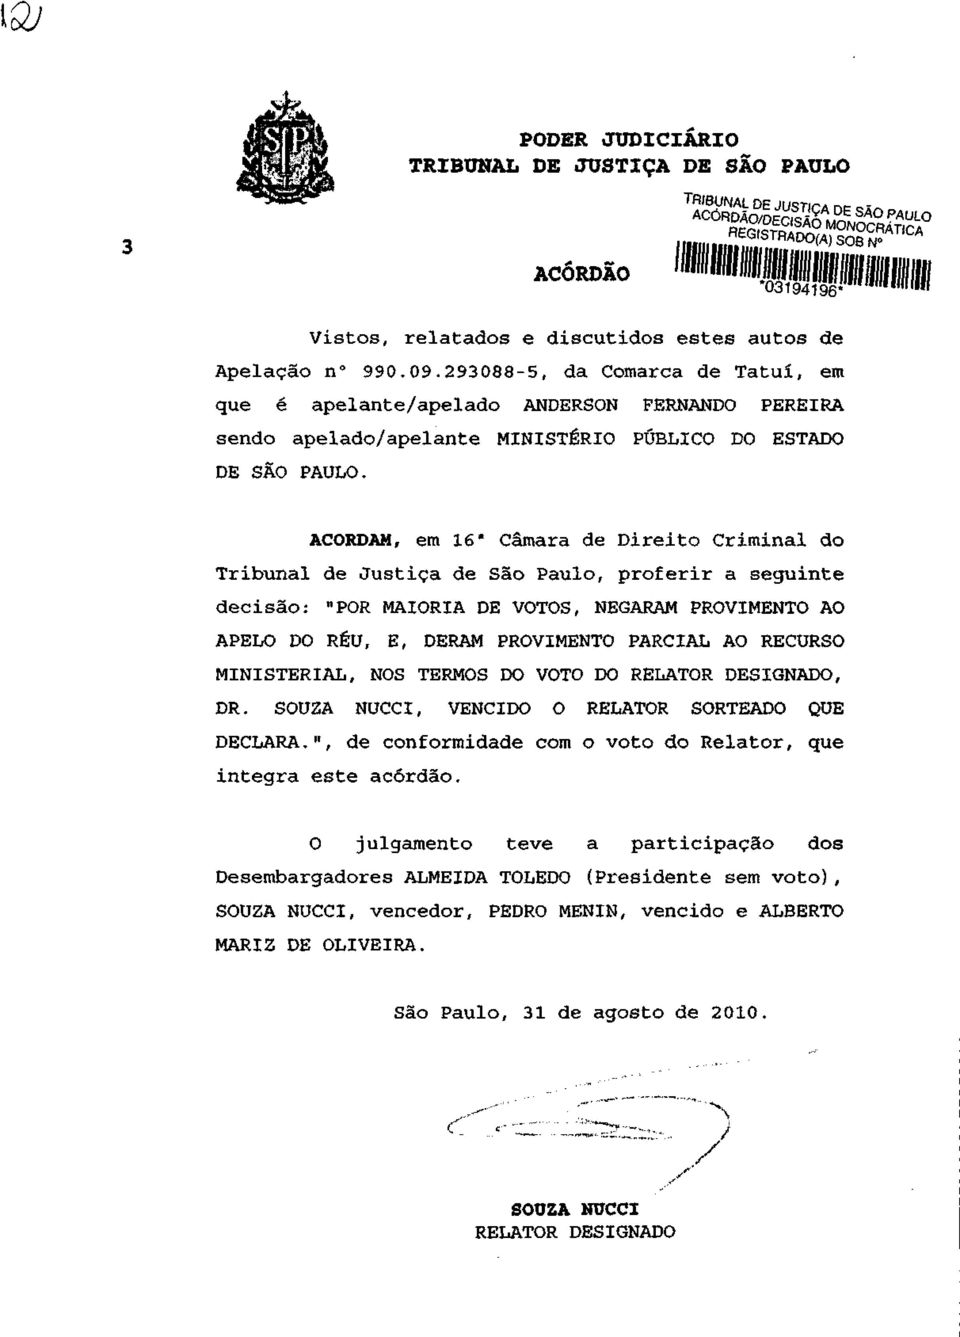 ACORDAM, em do Tribunal de Justiça de São Paulo, proferir a seguinte decisão: "POR MAIORIA DE VOTOS, NEGARAM PROVIMENTO AO APELO DO RÉU, E, DERAM PROVIMENTO PARCIAL AO RECURSO MINISTERIAL, NOS TERMOS